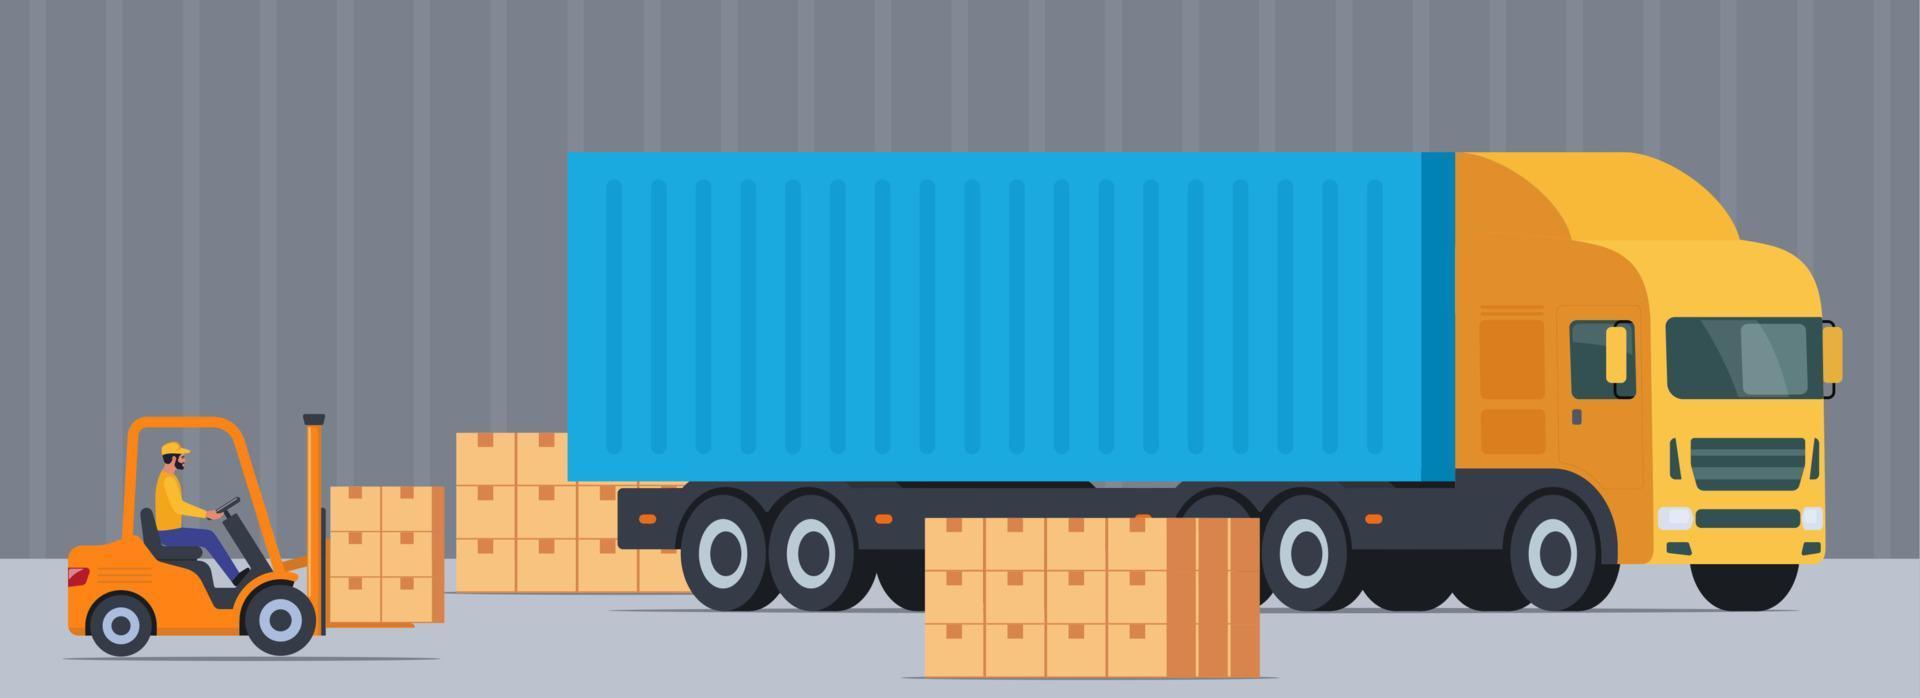 carregando o caminhão com caixas no armazém industrial com uma empilhadeira transporte de carga, expedição e logística. ilustração vetorial. vetor